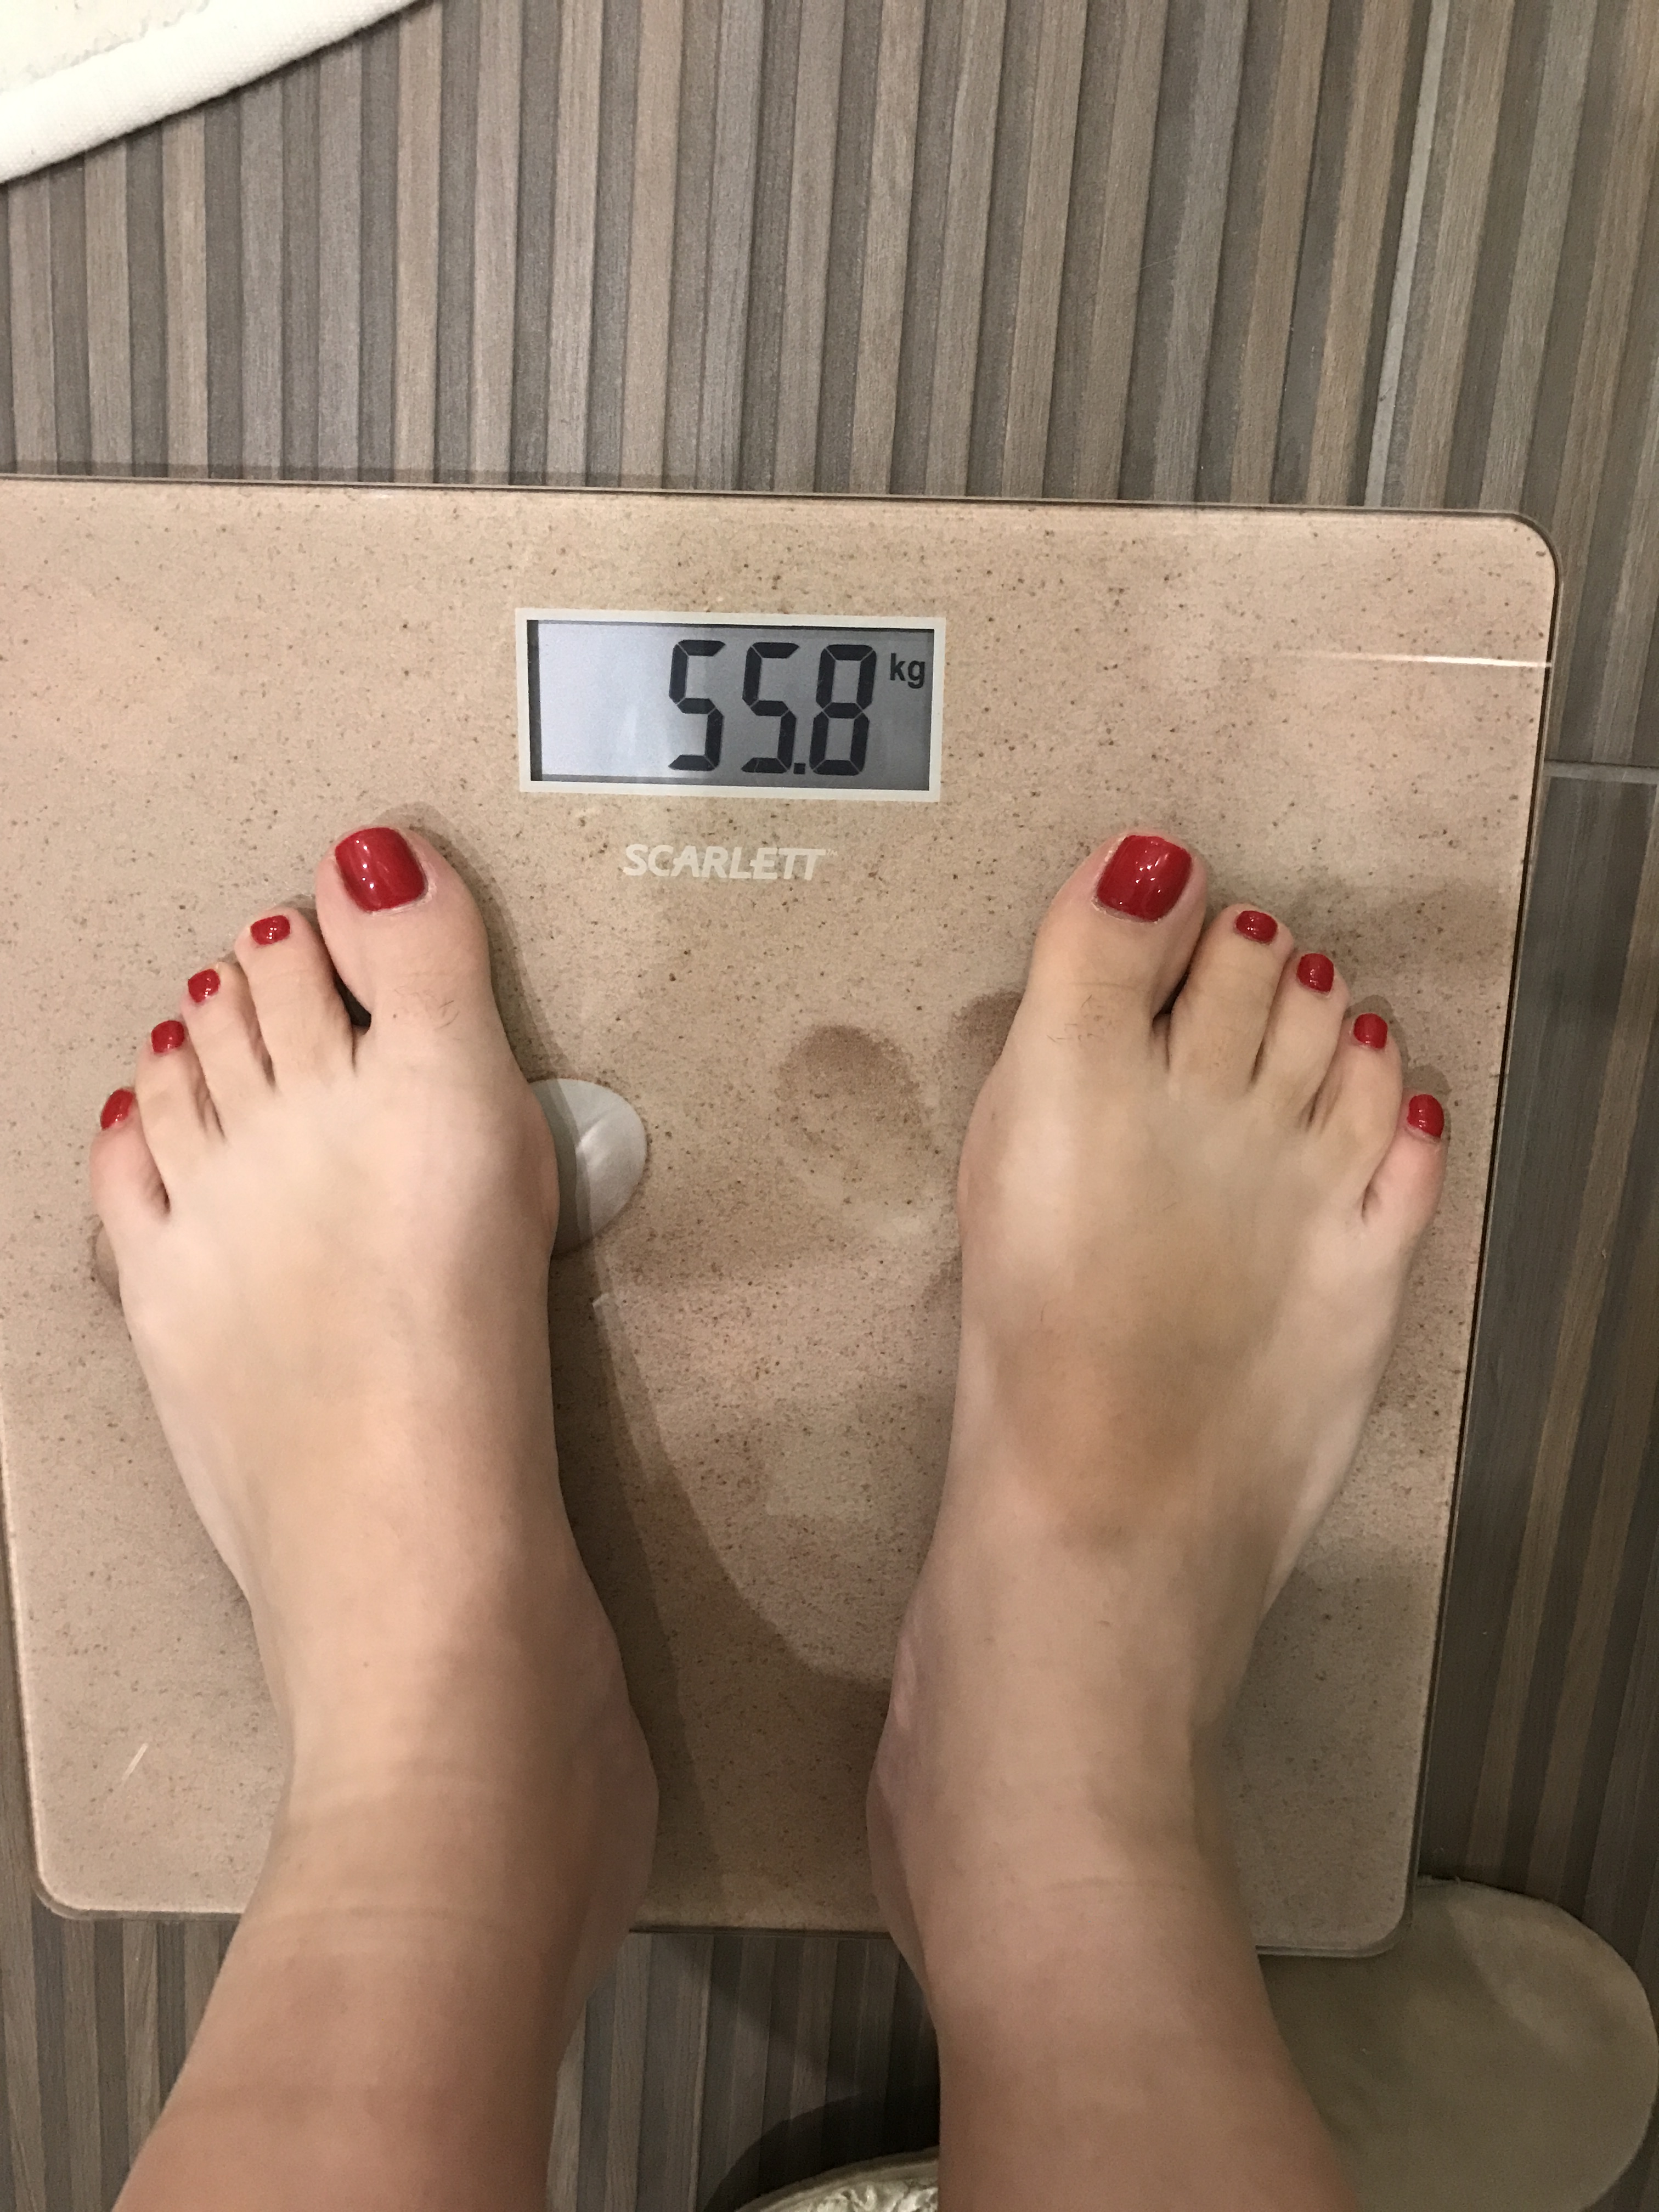 0 52 кг